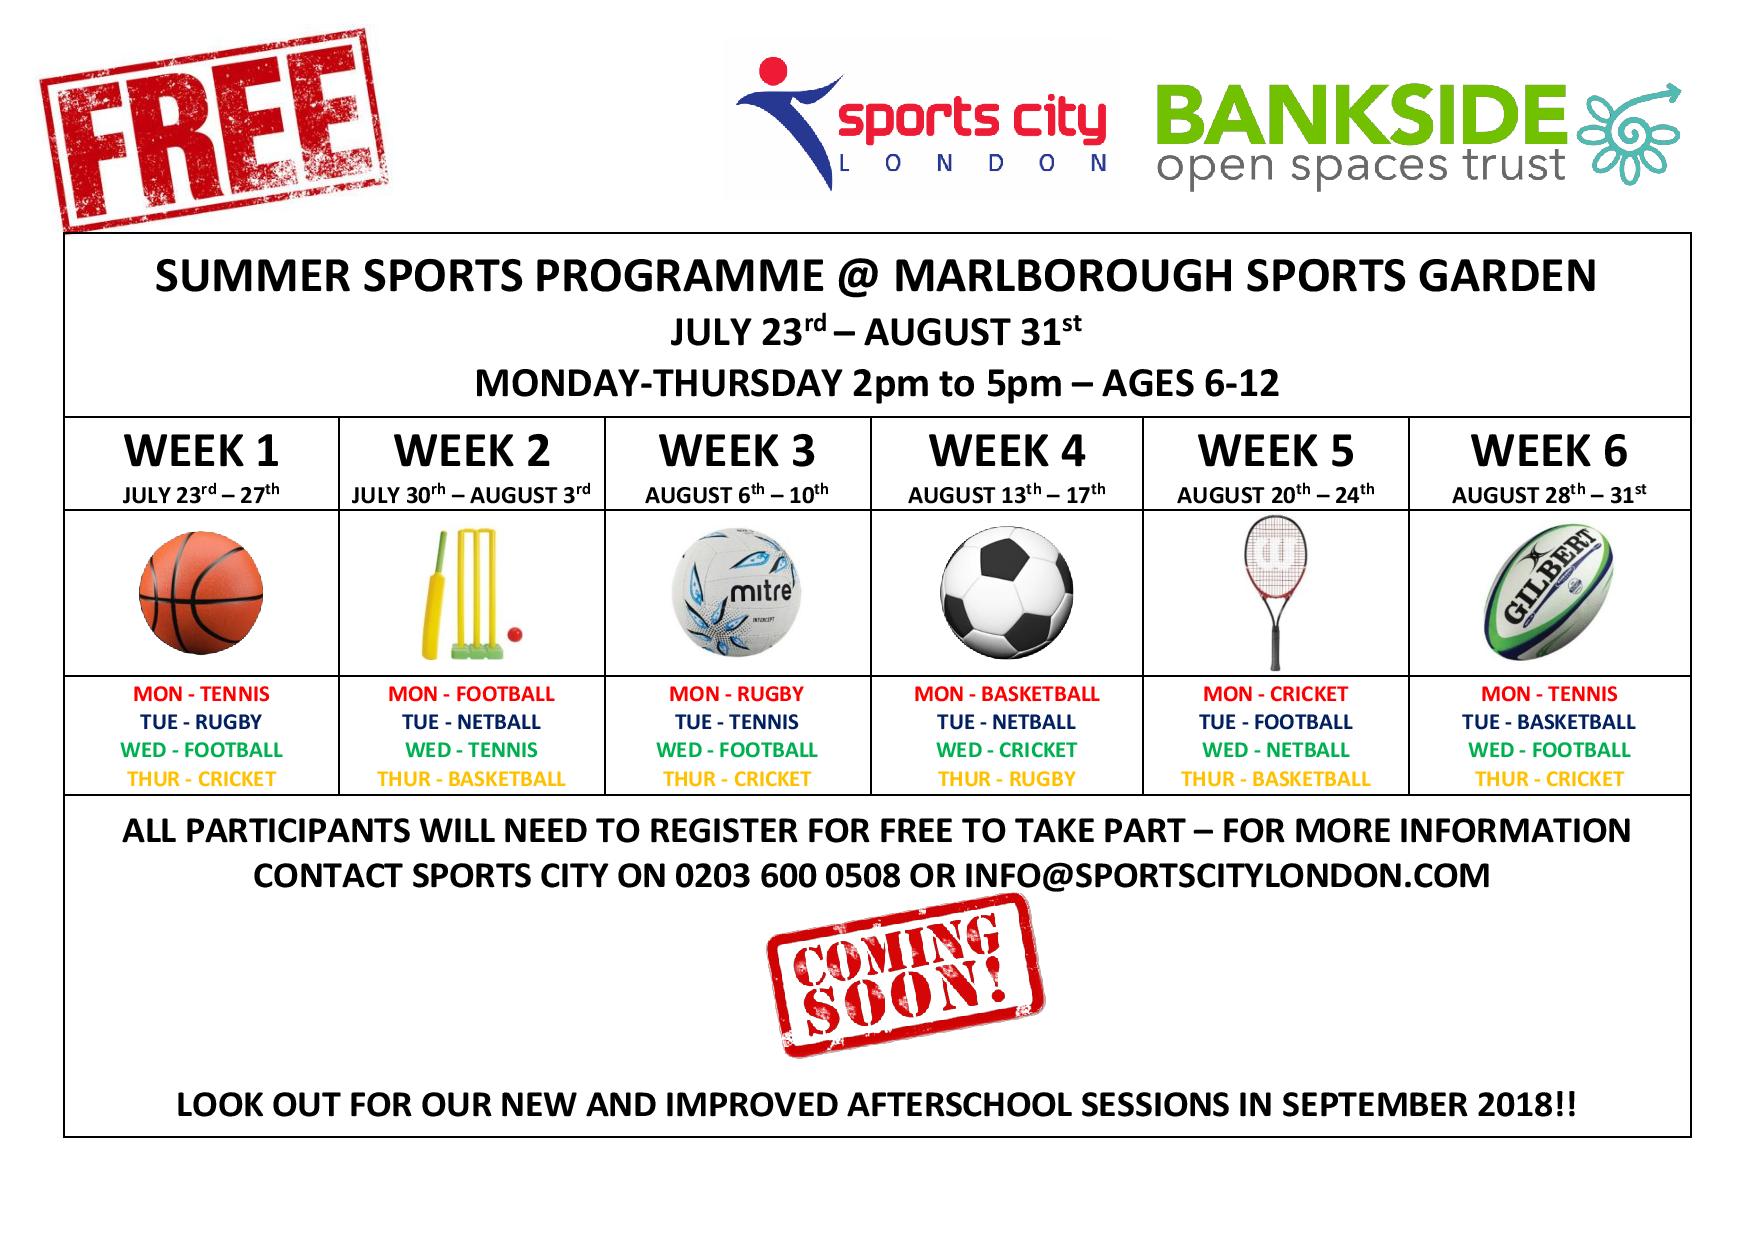 Free Summer Sports Programme at Marlborough Sports Garden